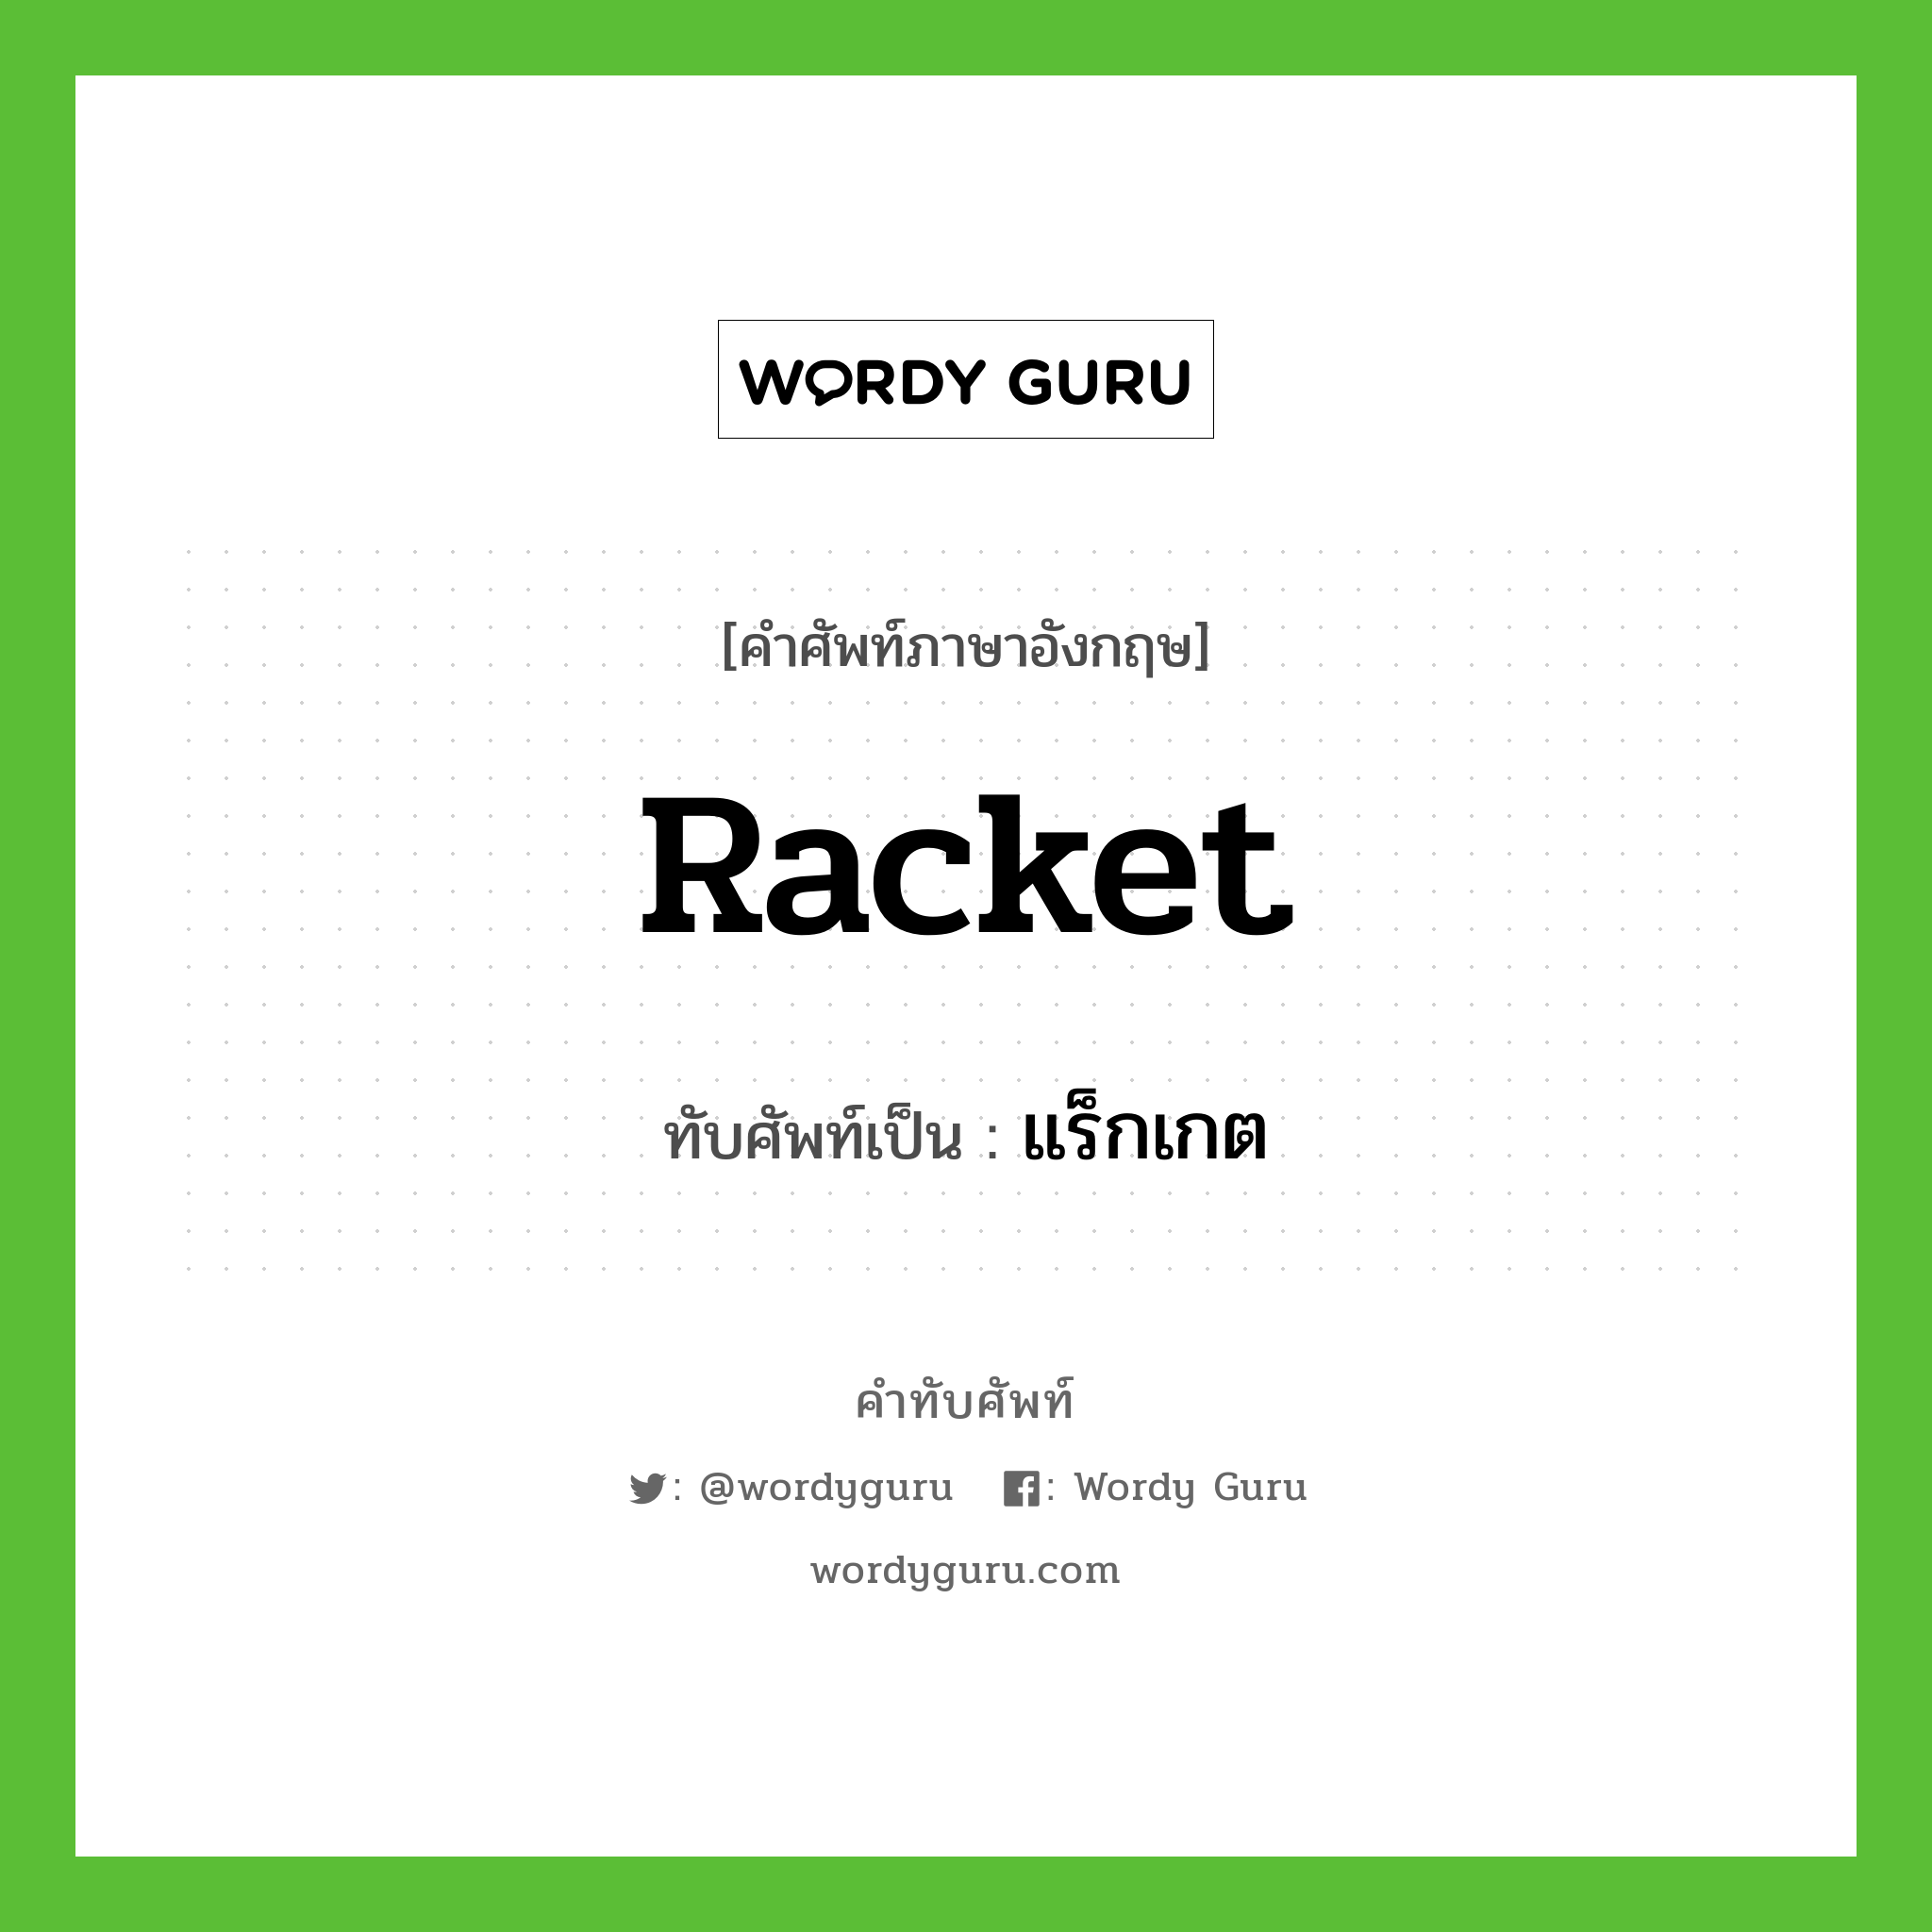 racket เขียนเป็นคำไทยว่าอะไร?, คำศัพท์ภาษาอังกฤษ racket ทับศัพท์เป็น แร็กเกต